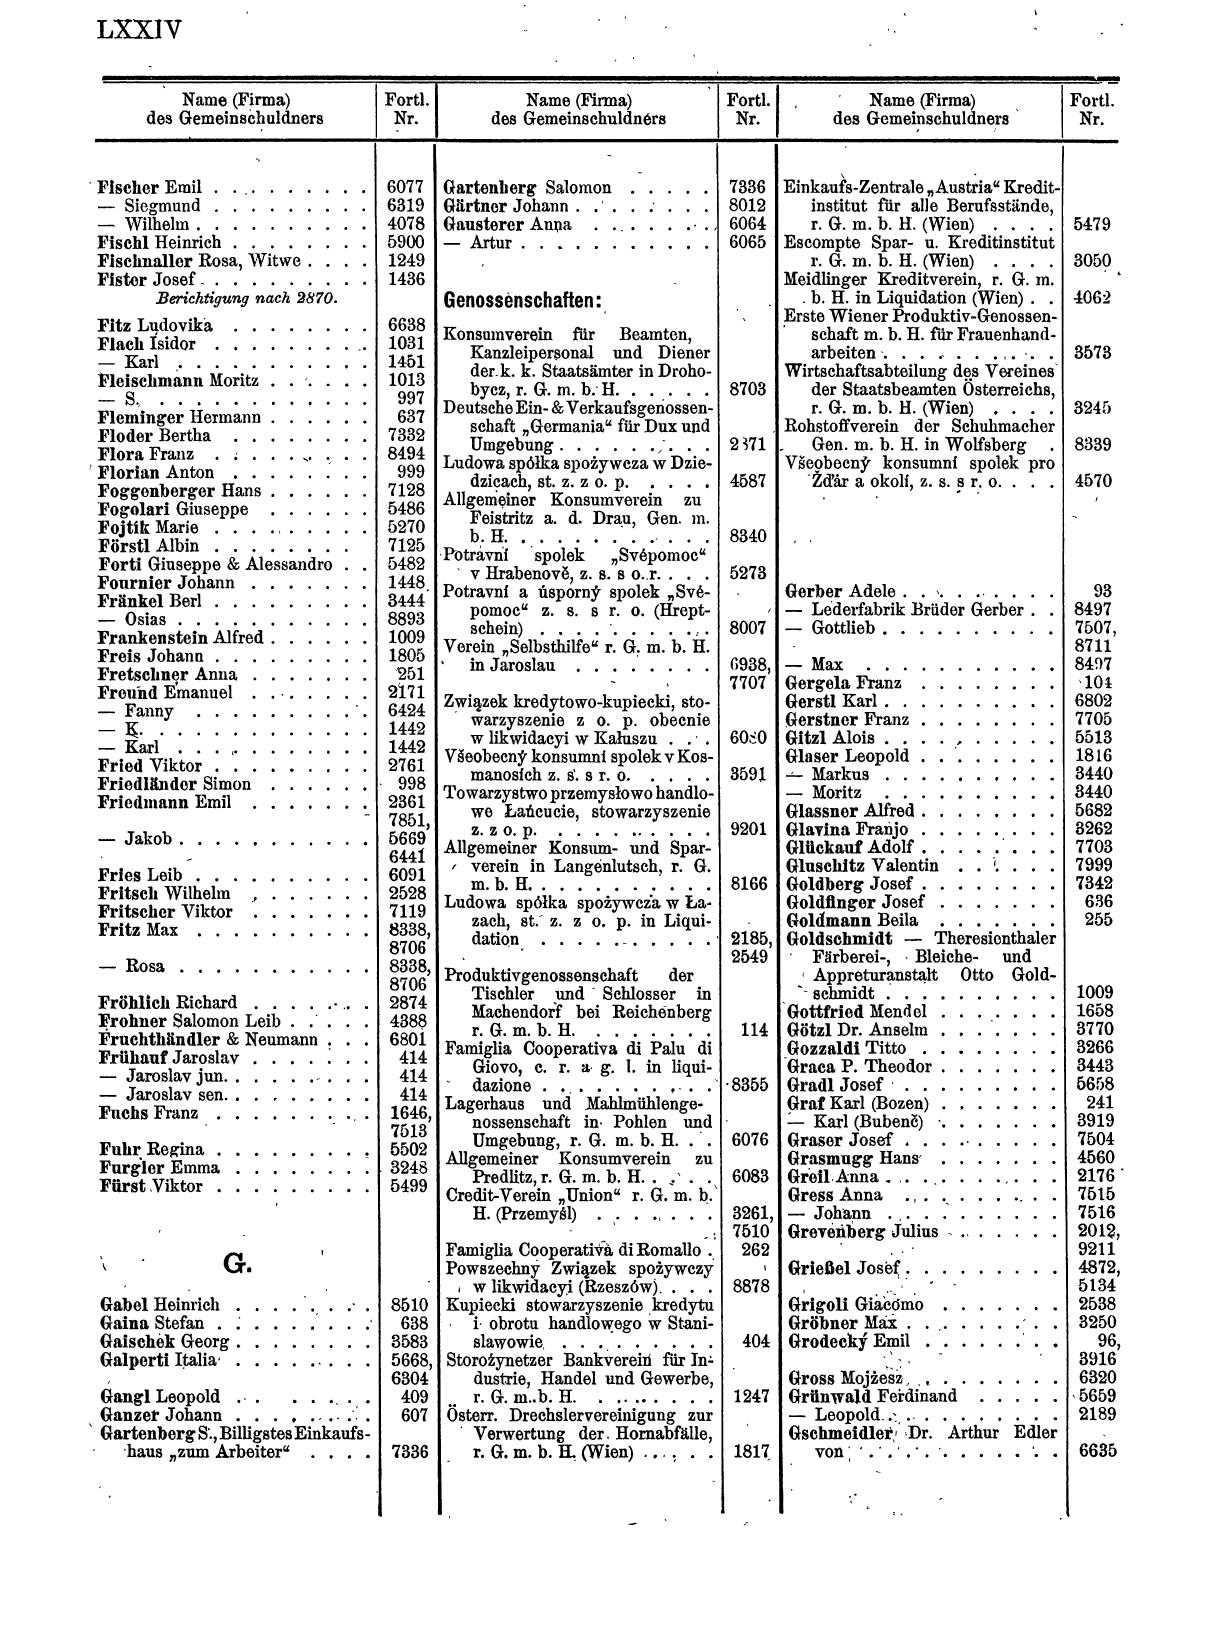 Zentralblatt für die Eintragungen in das Handelsregister 1913, Teil 1 - Seite 82